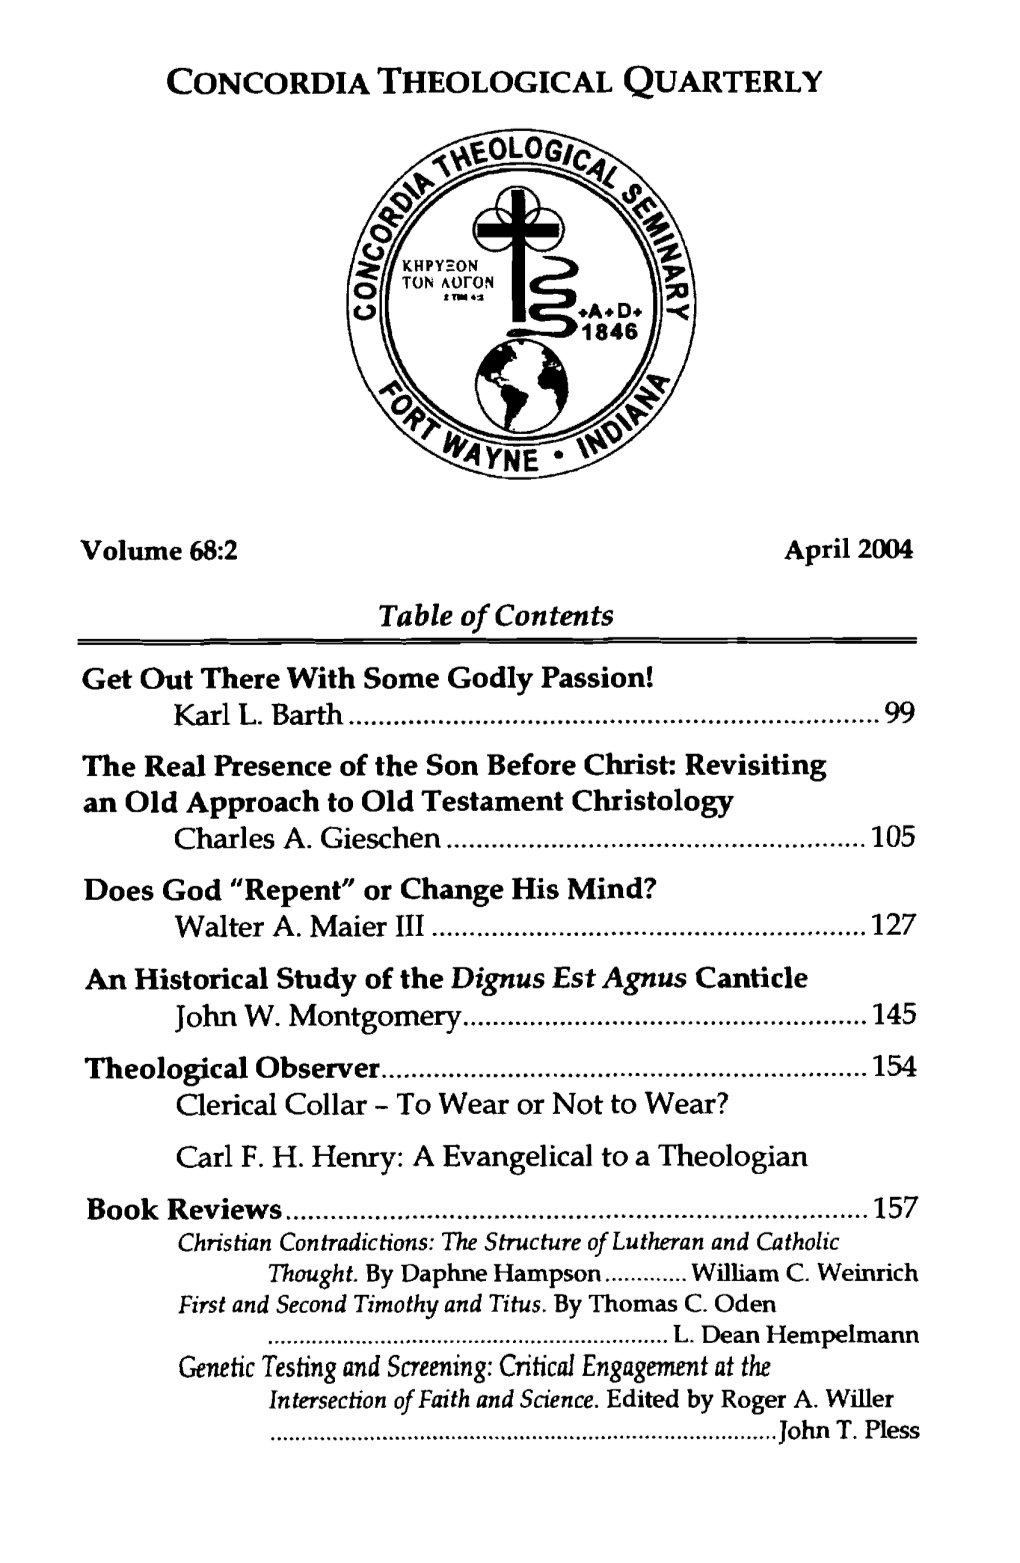 Book Reviews, April 2004